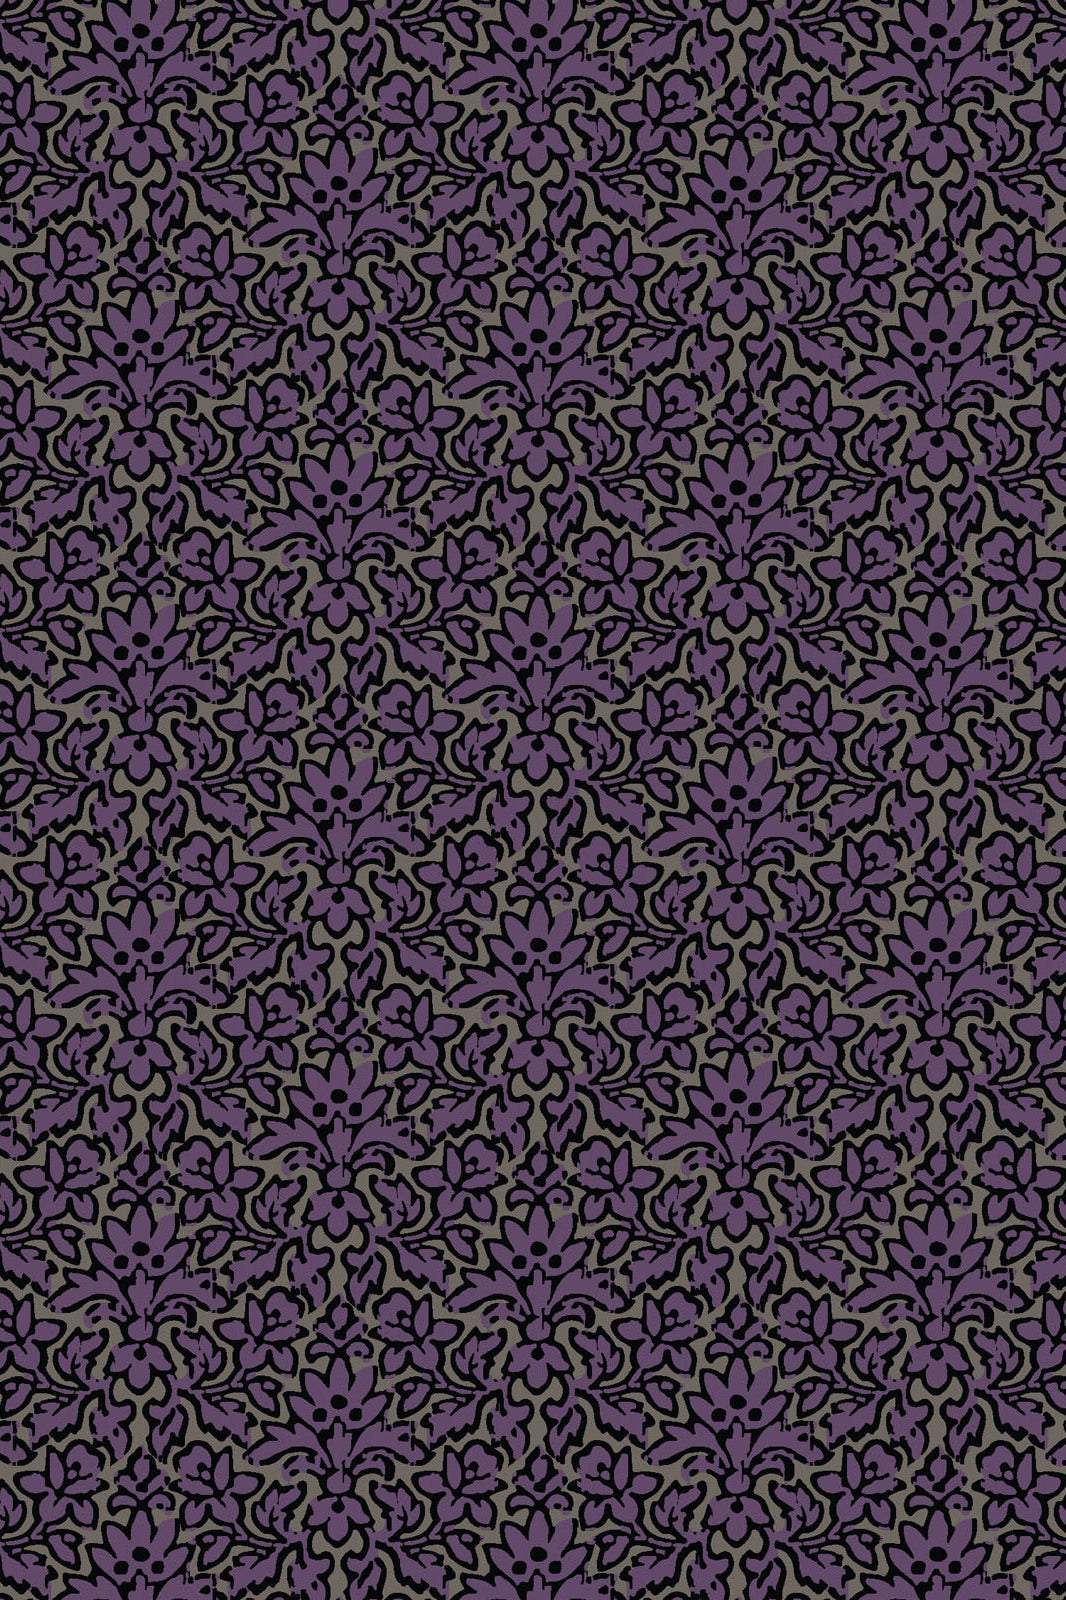 Web of Roses Damask Purple